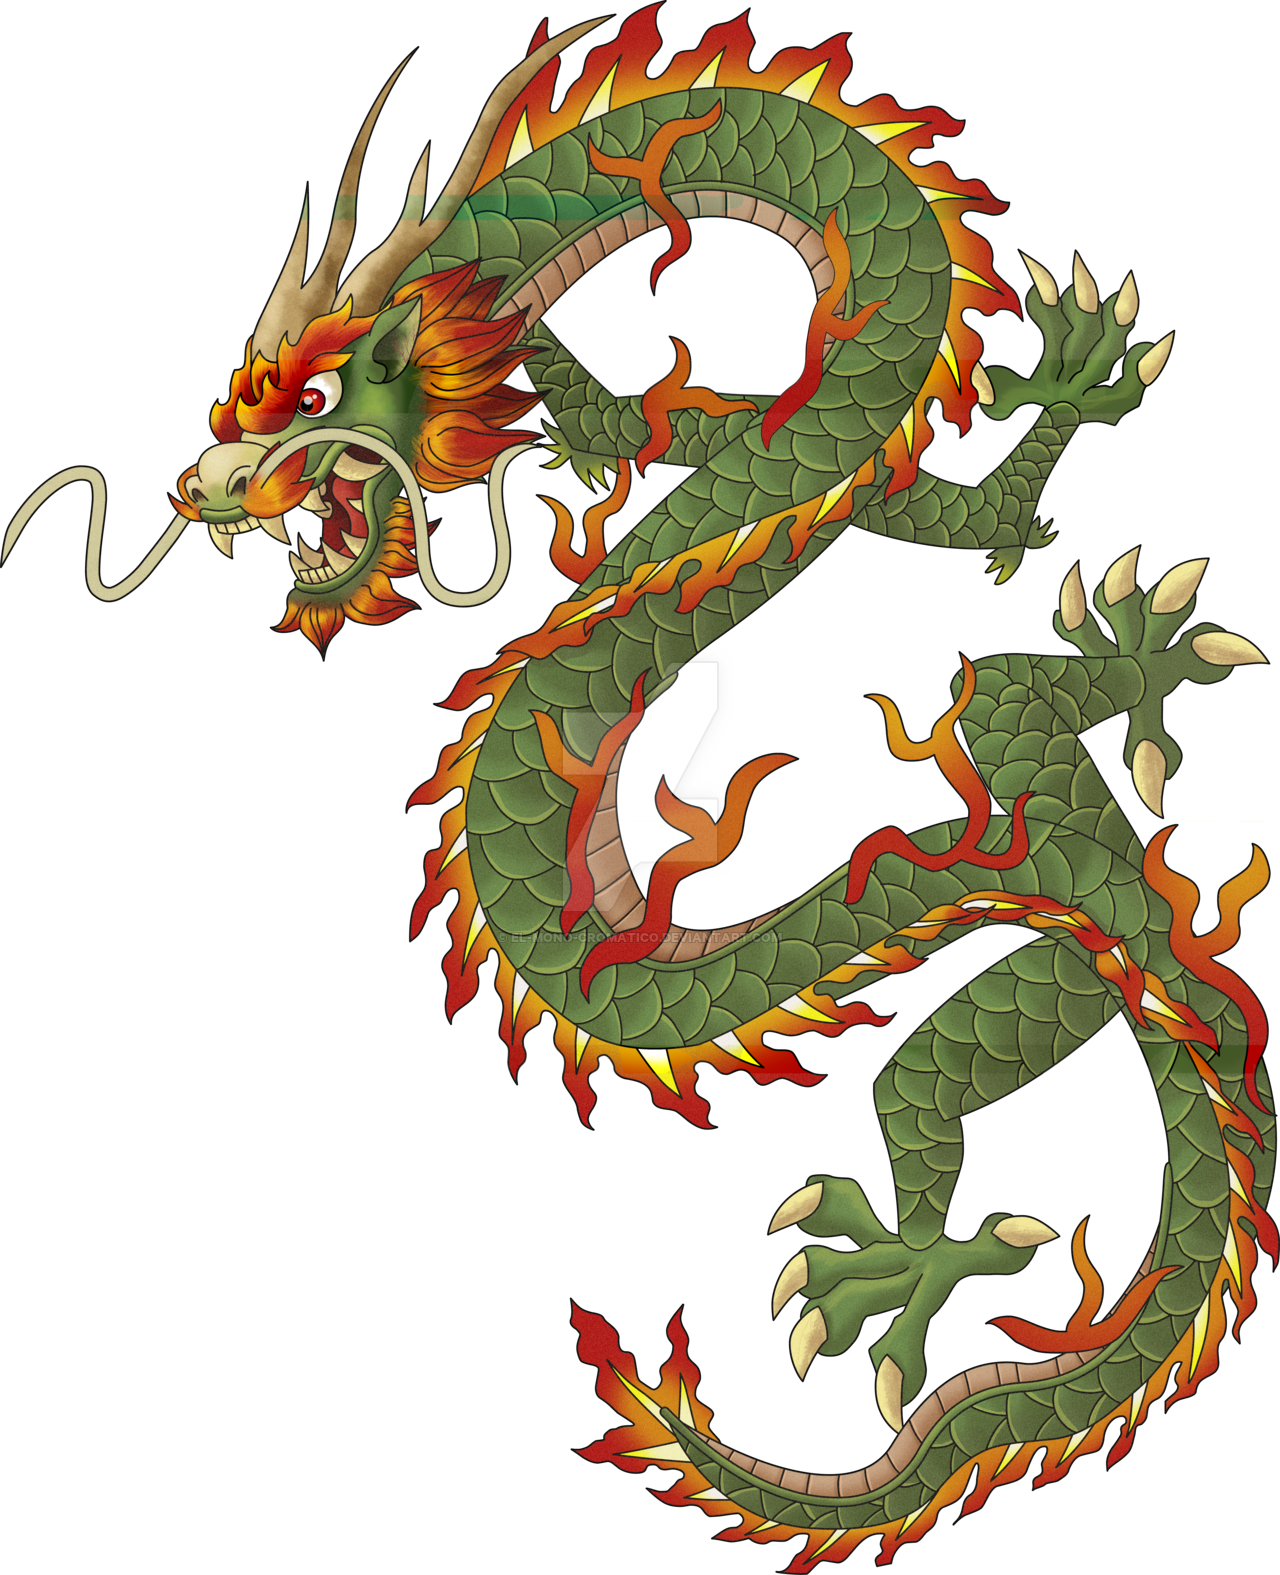 Chinese Imagen transparente del dragón